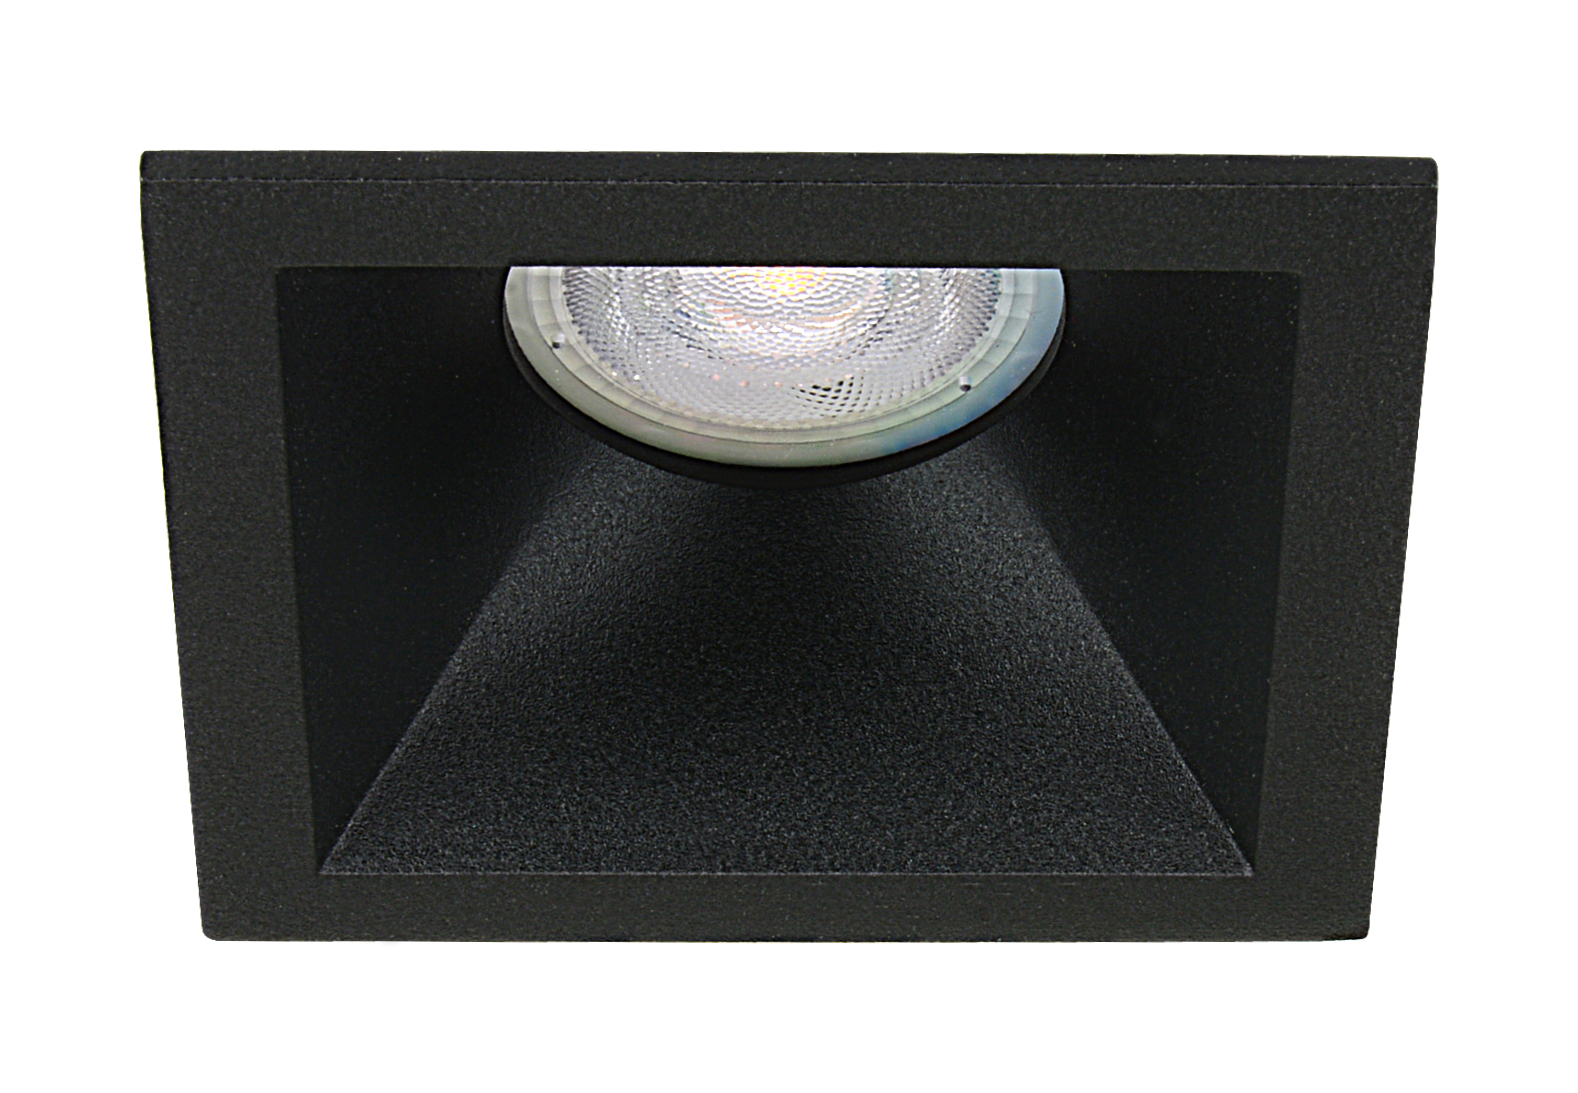 LED inbouwspot Age -Verdiept Zwart -Warm Wit -Dimbaar -5W -Philips LED